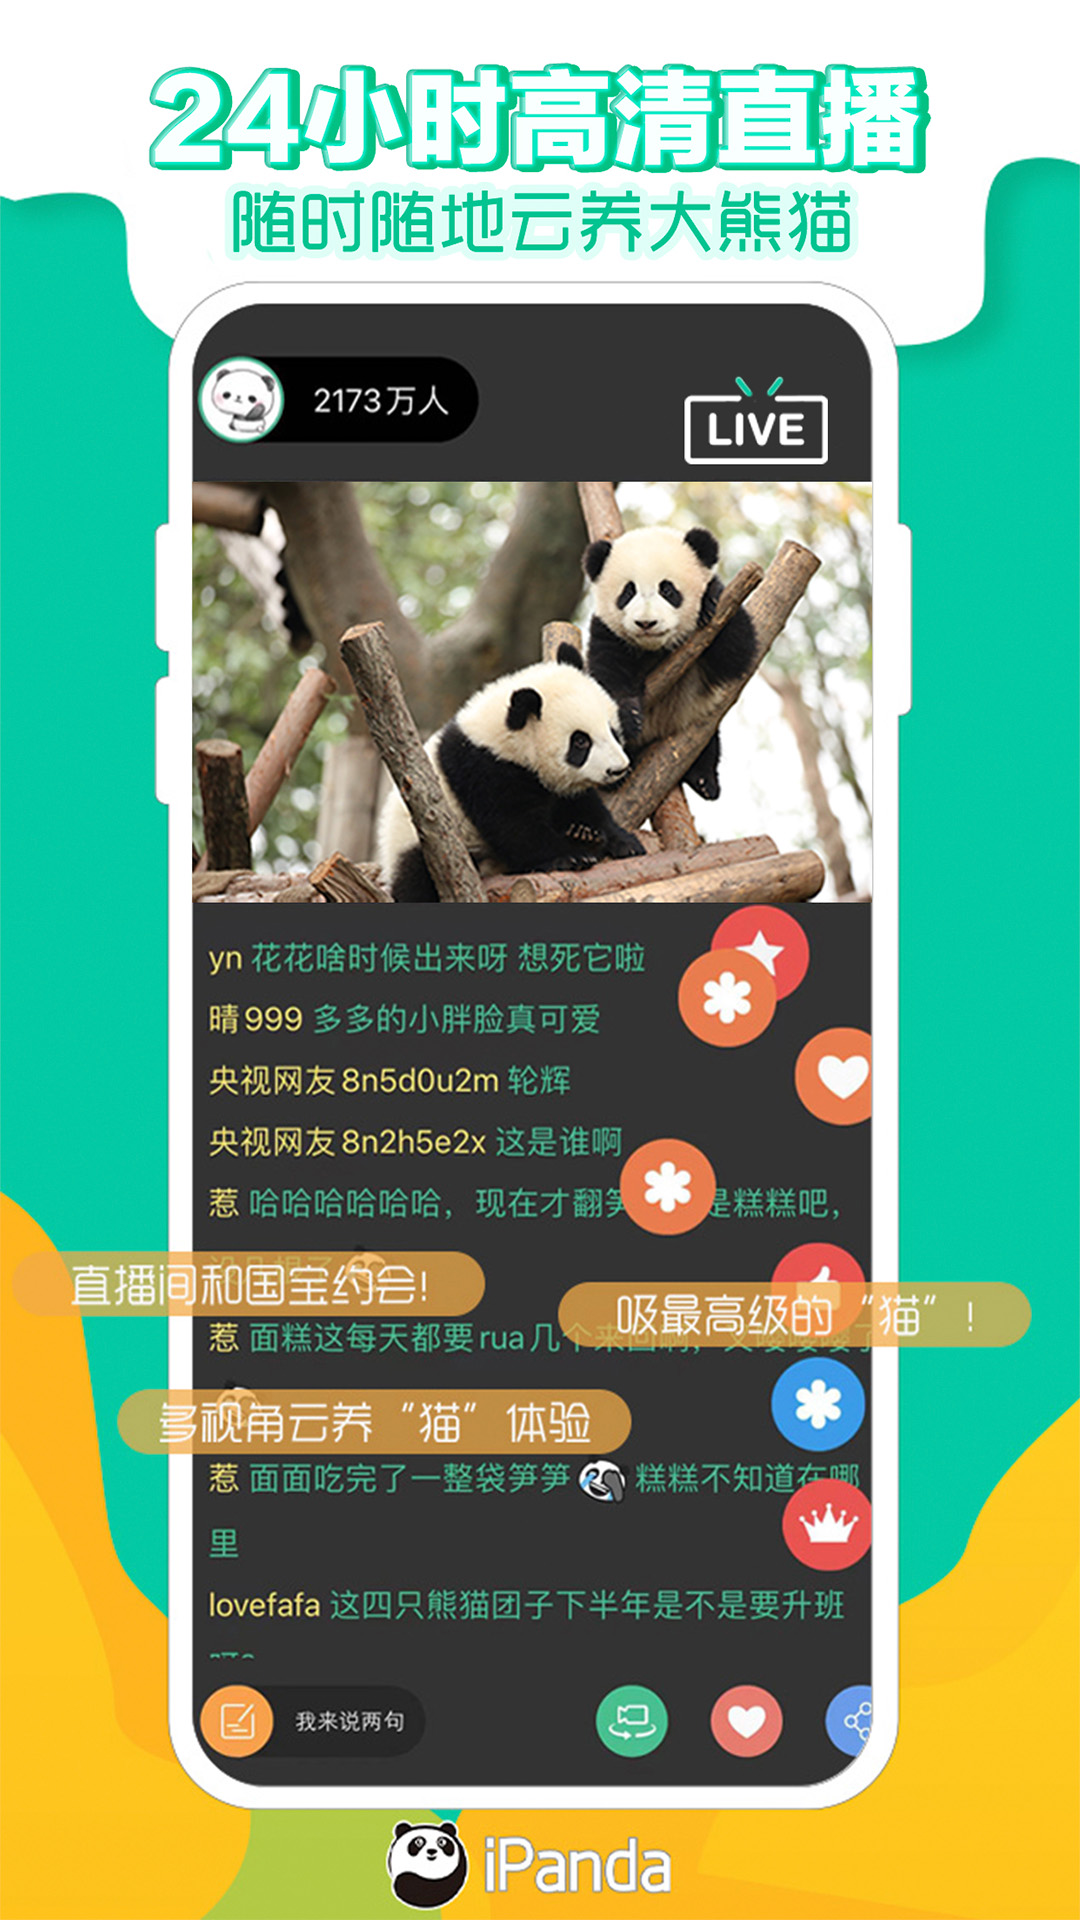 熊猫频道截图1